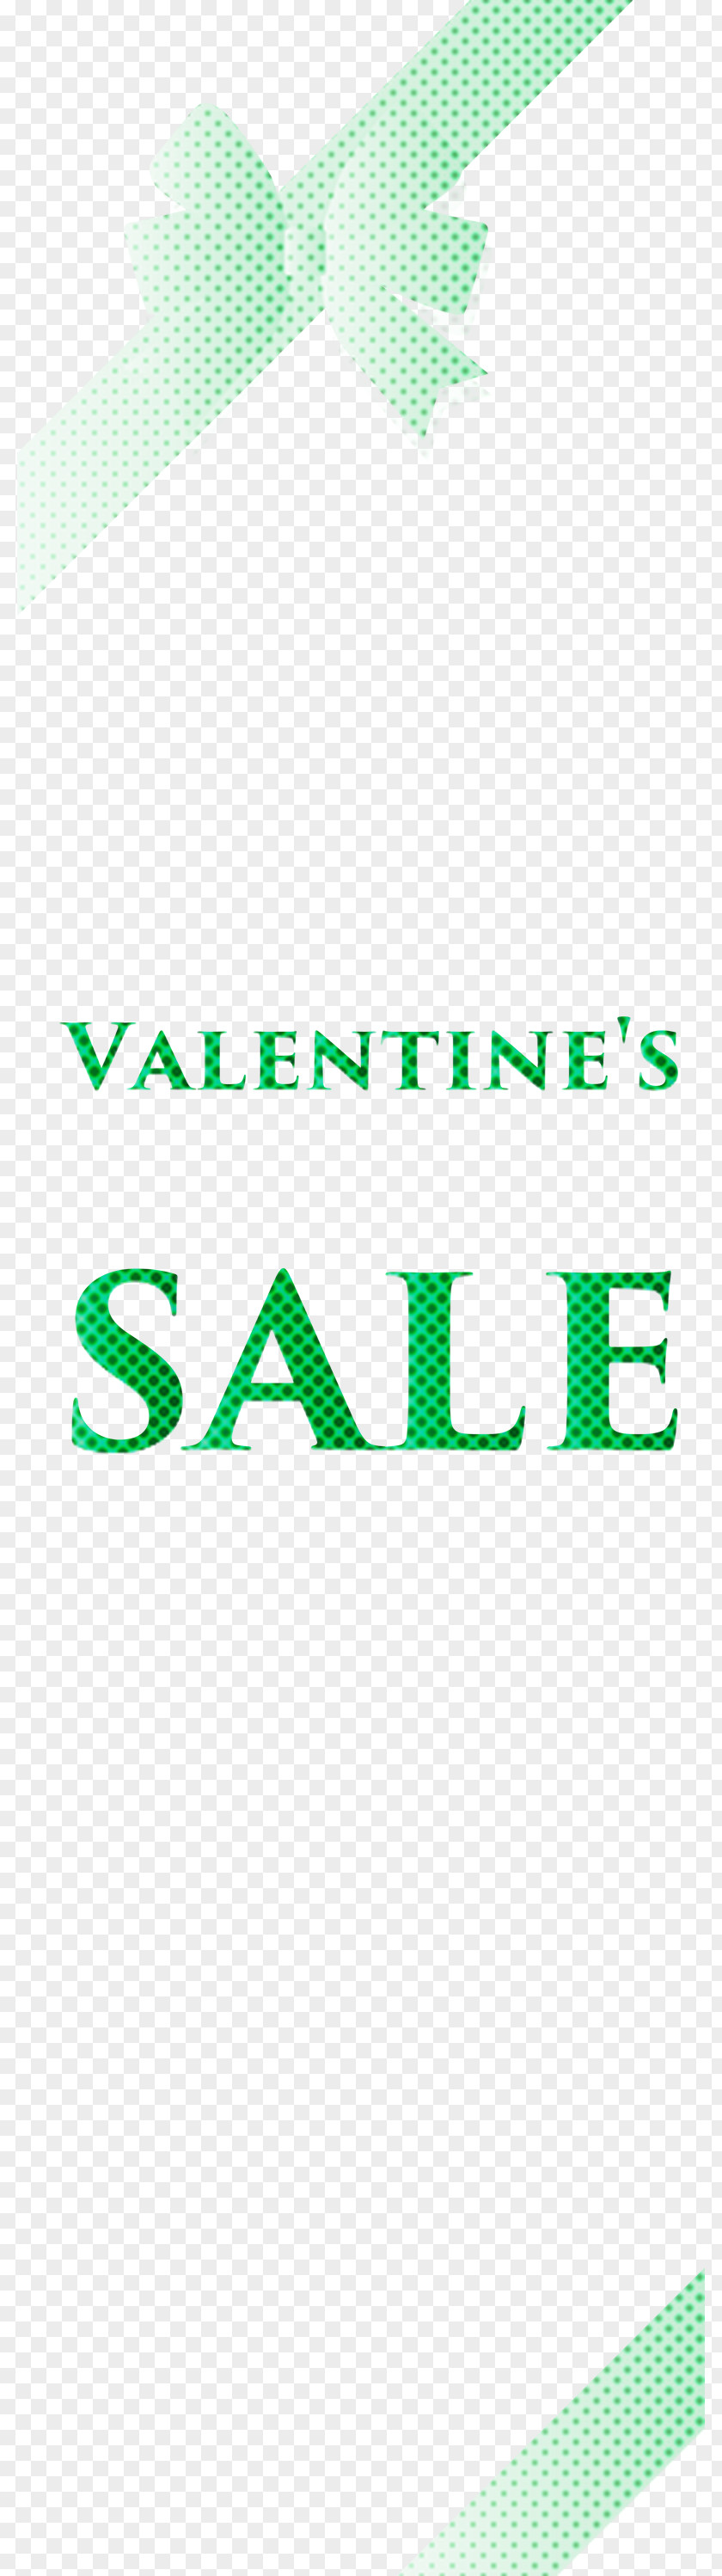 Valentines Sale Banner Design PNG